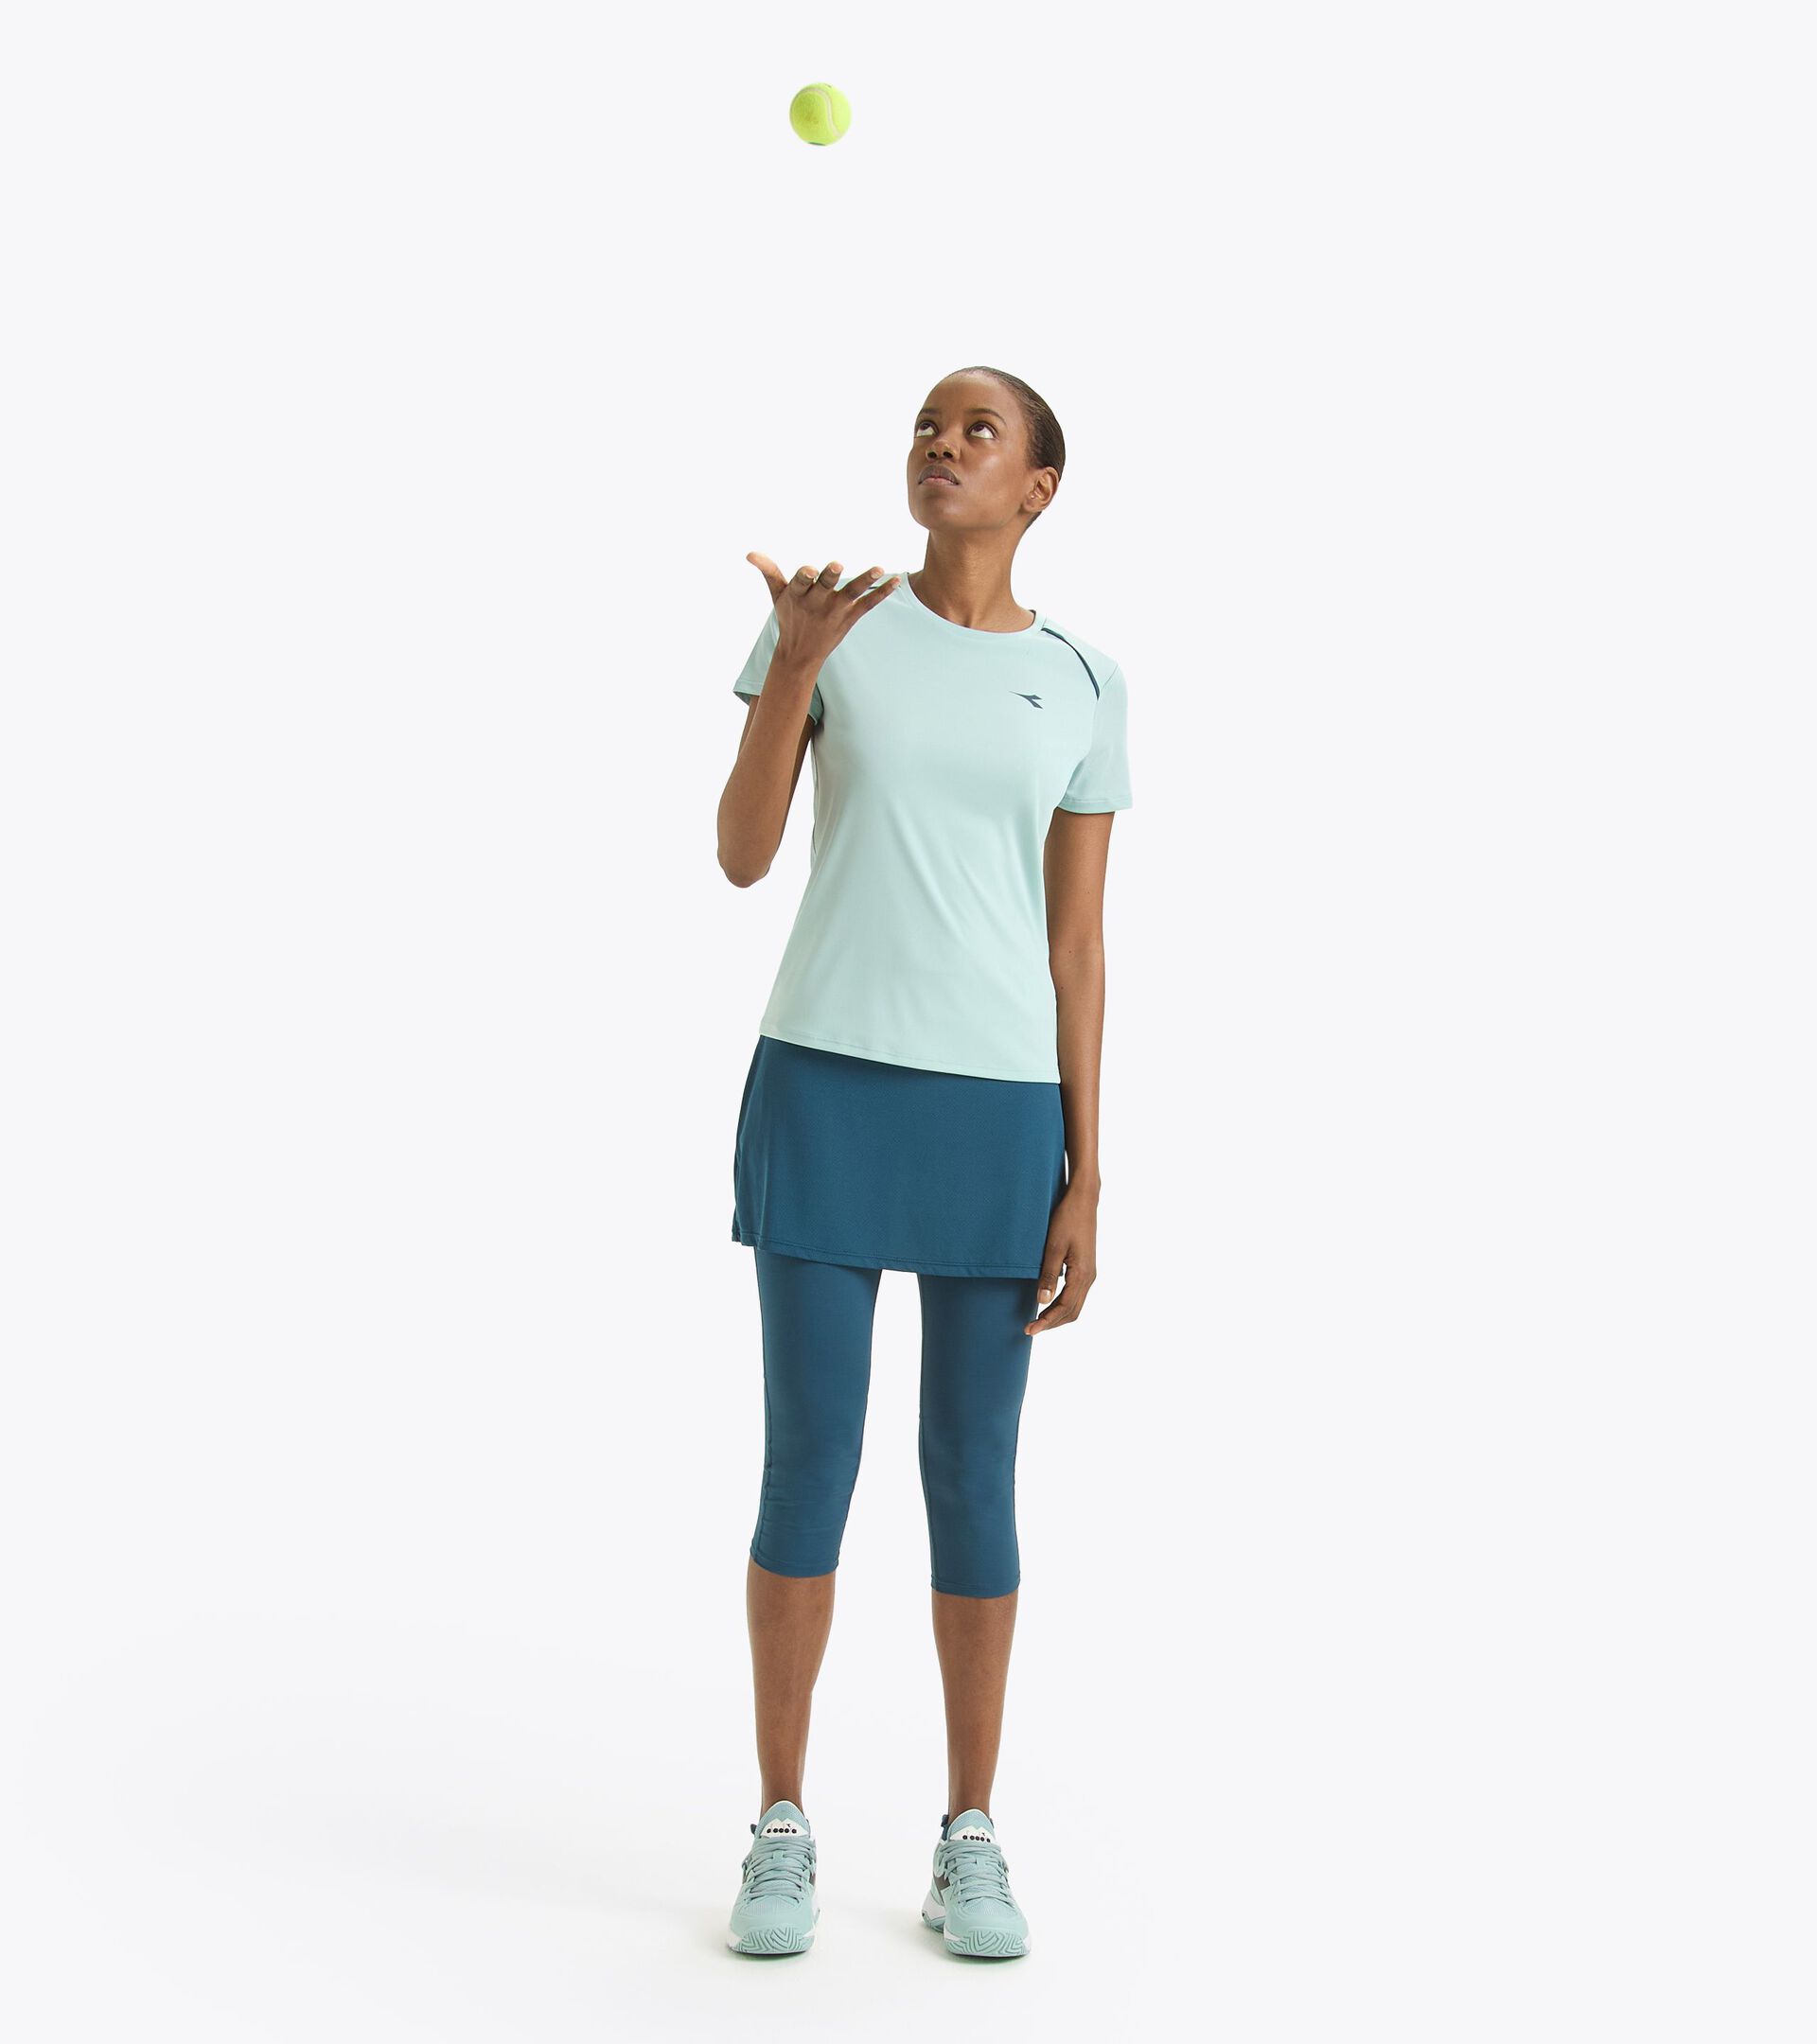 L. POWER SKIRT Tennis skirt with integrated 3/4-length leggings